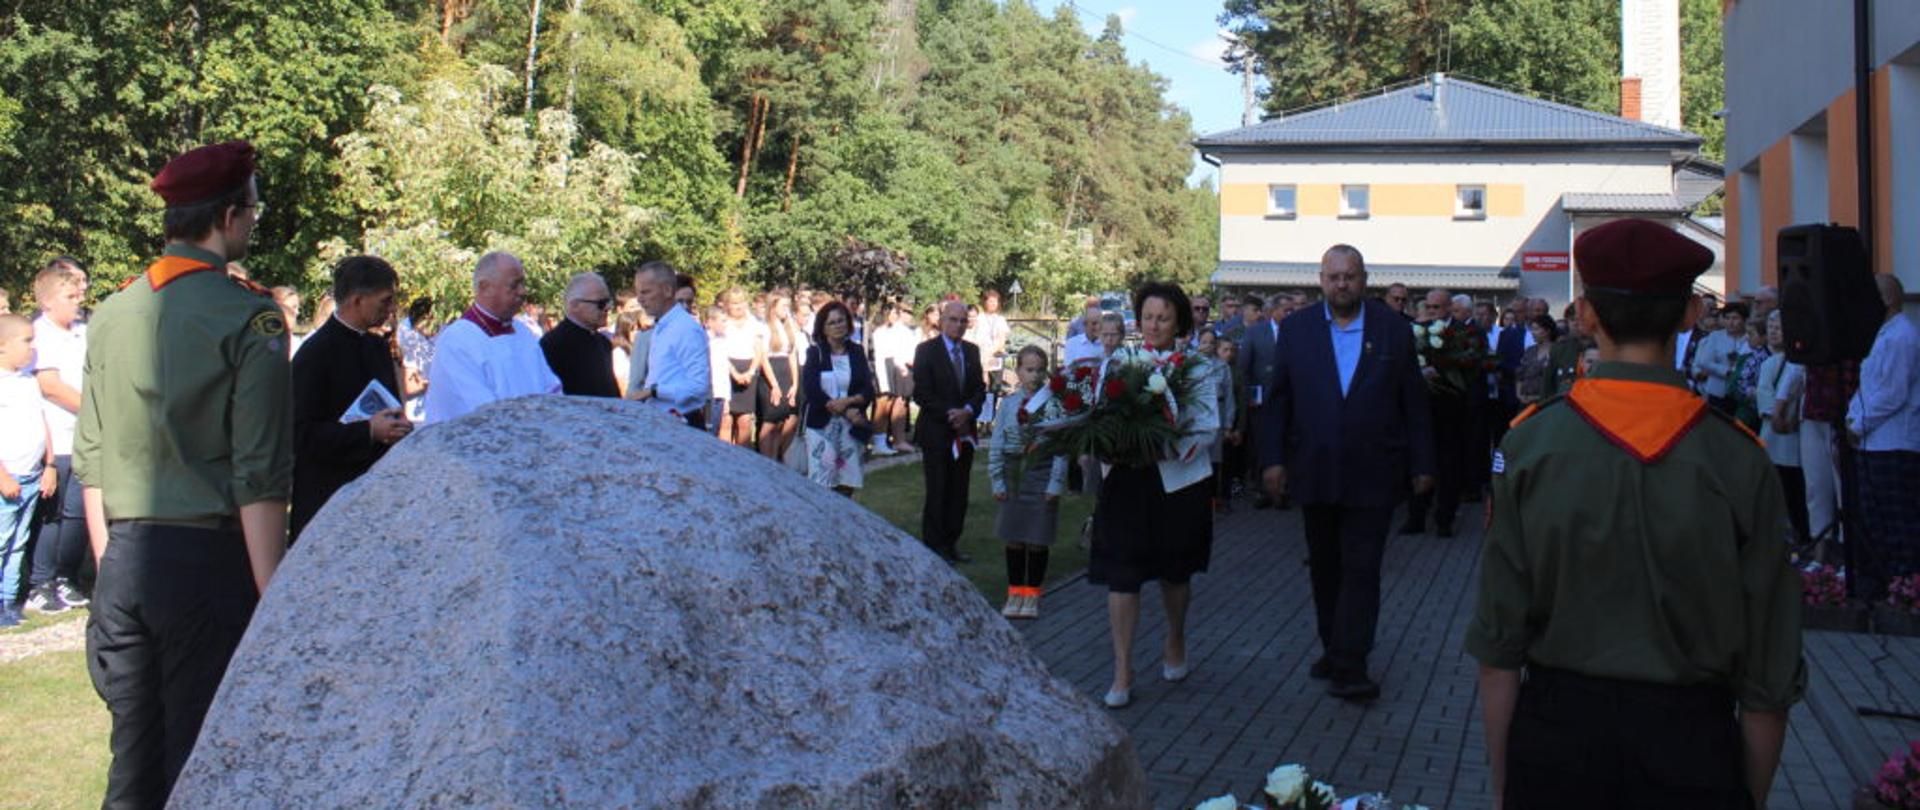 Złożenie wieńców przez delegacje samorządowe przy kamieniu upamiętniającym poległych w obozie w Treblince.